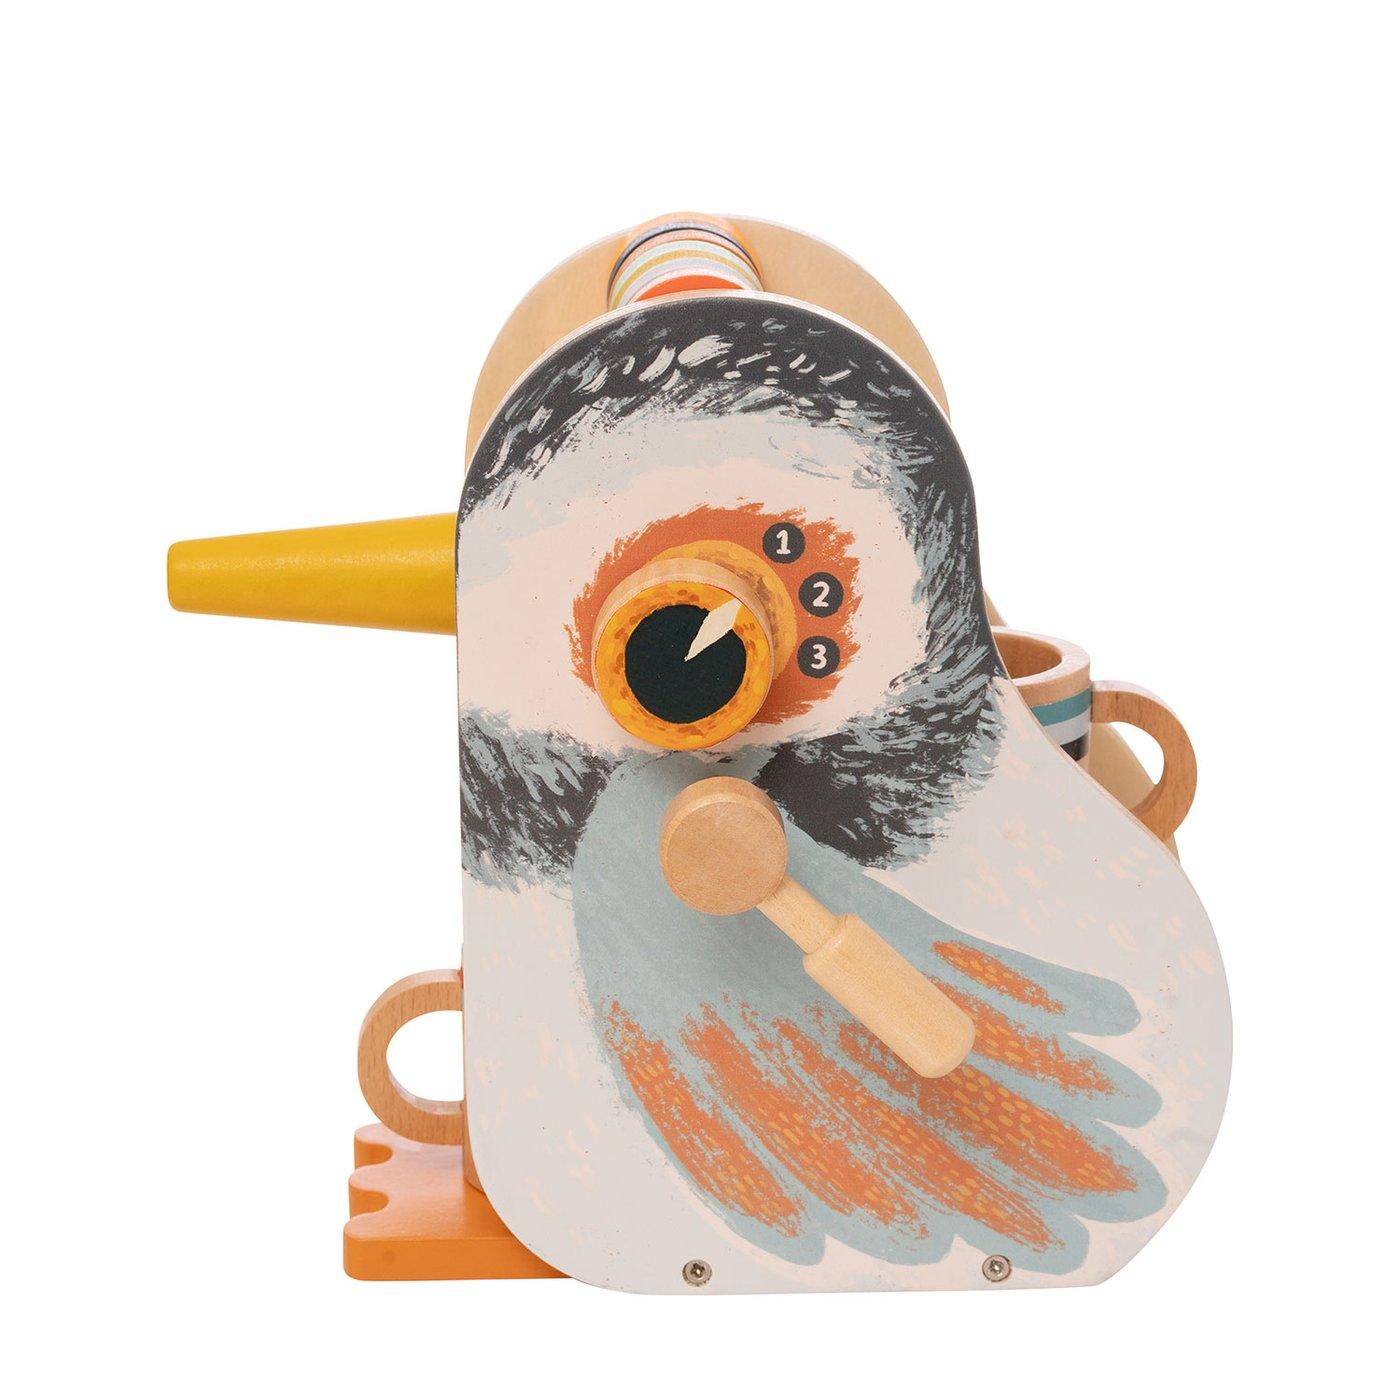 Manhattan Toy: drewniany ekspres do kawy Early Birds - Noski Noski